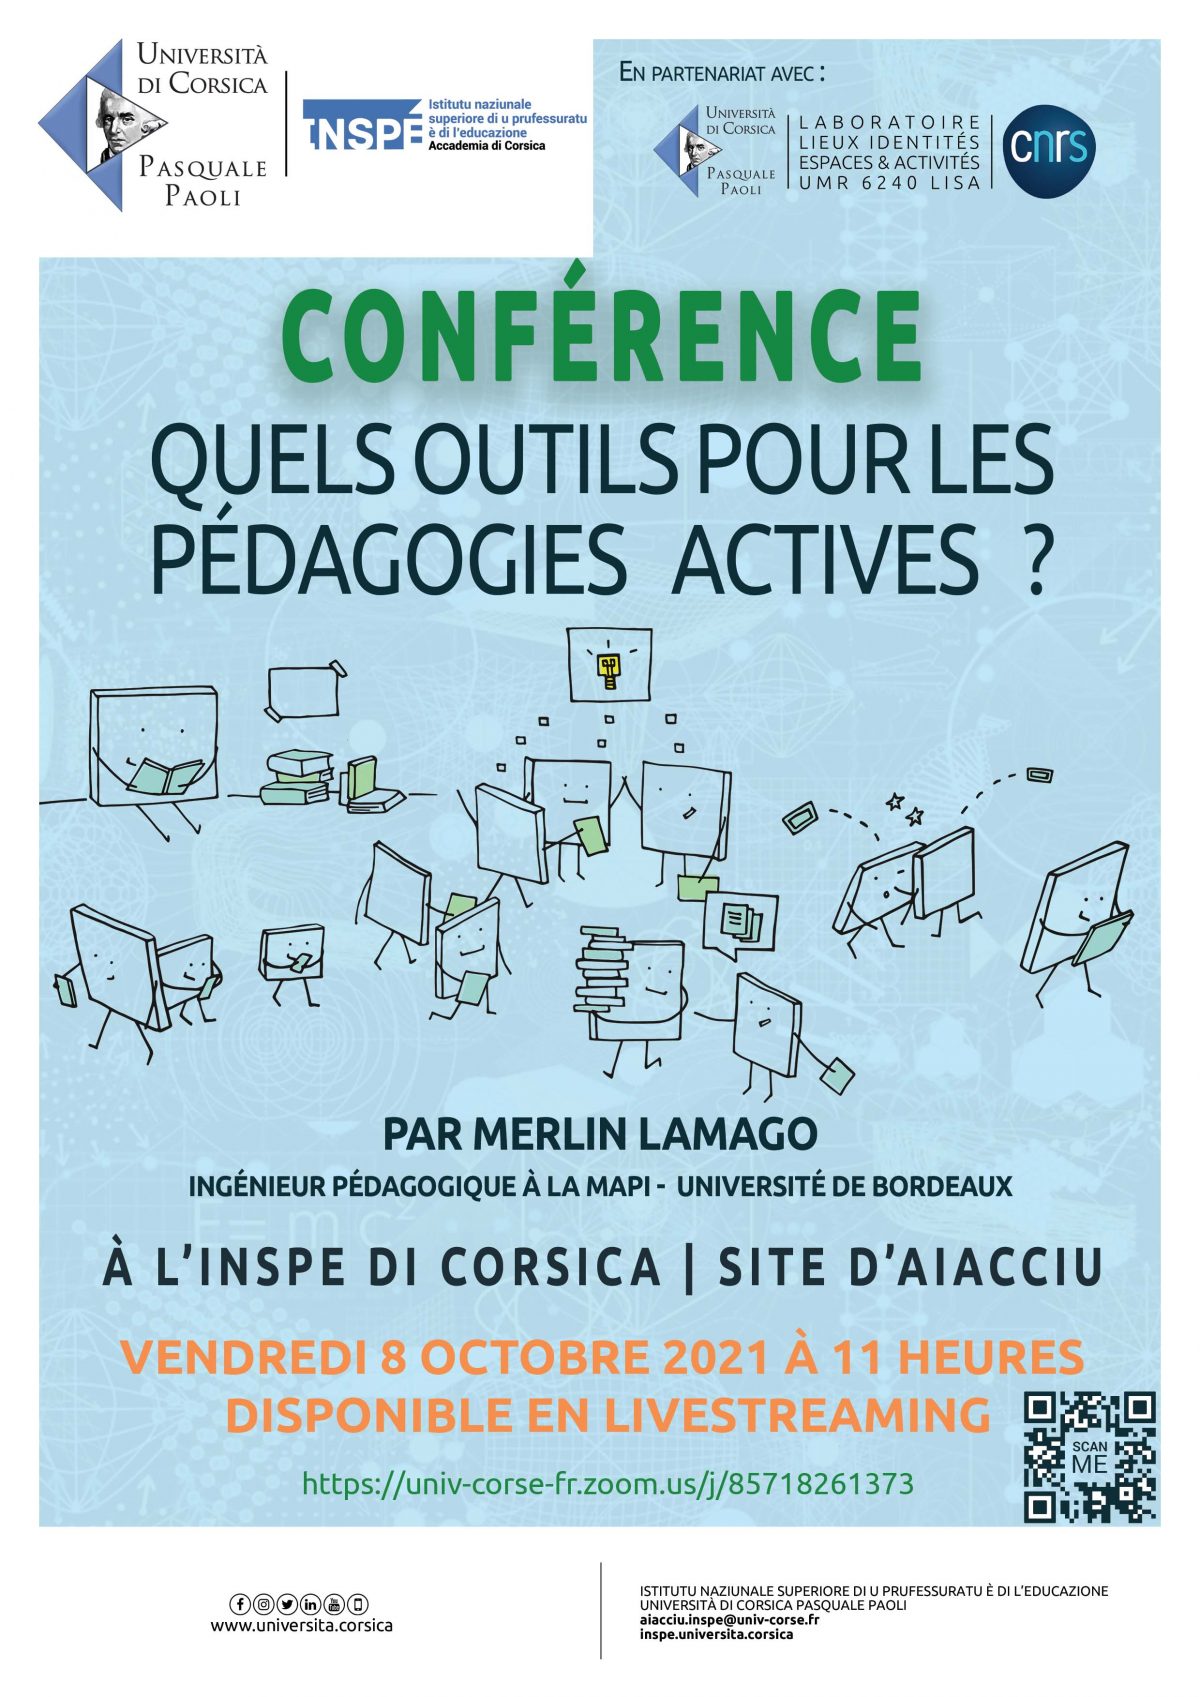 Conférence « Quels outils pour les pédagogies actives ? en partenariat avec l’INSPE de Corse